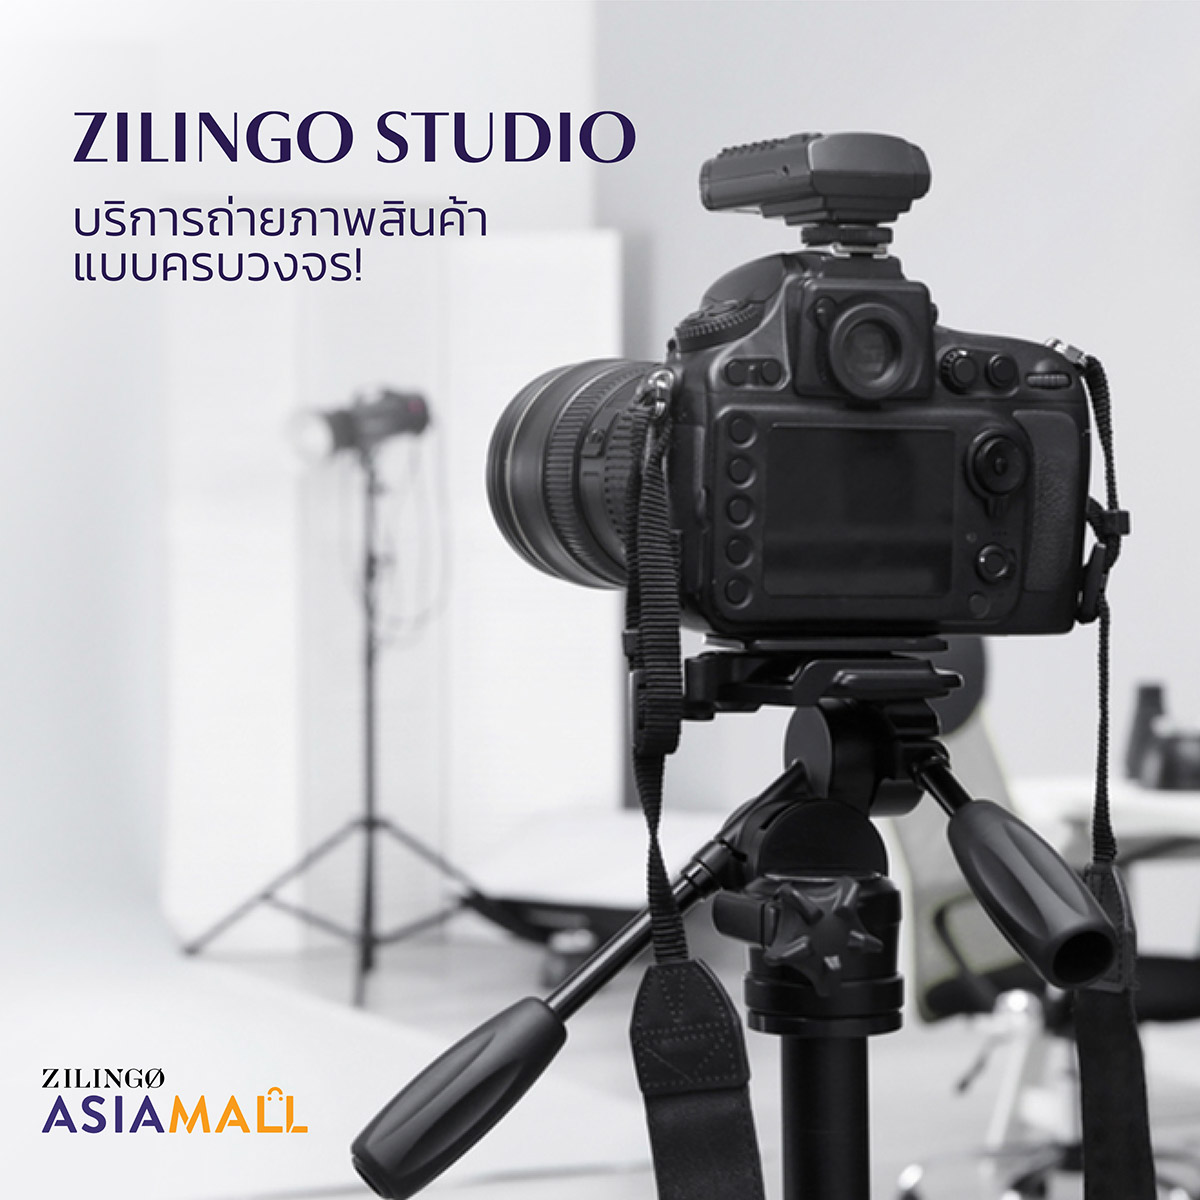 Zilingo Studio บริการถ่ายภาพสินค้าแบบครบวงจร เปิดแล้ว!